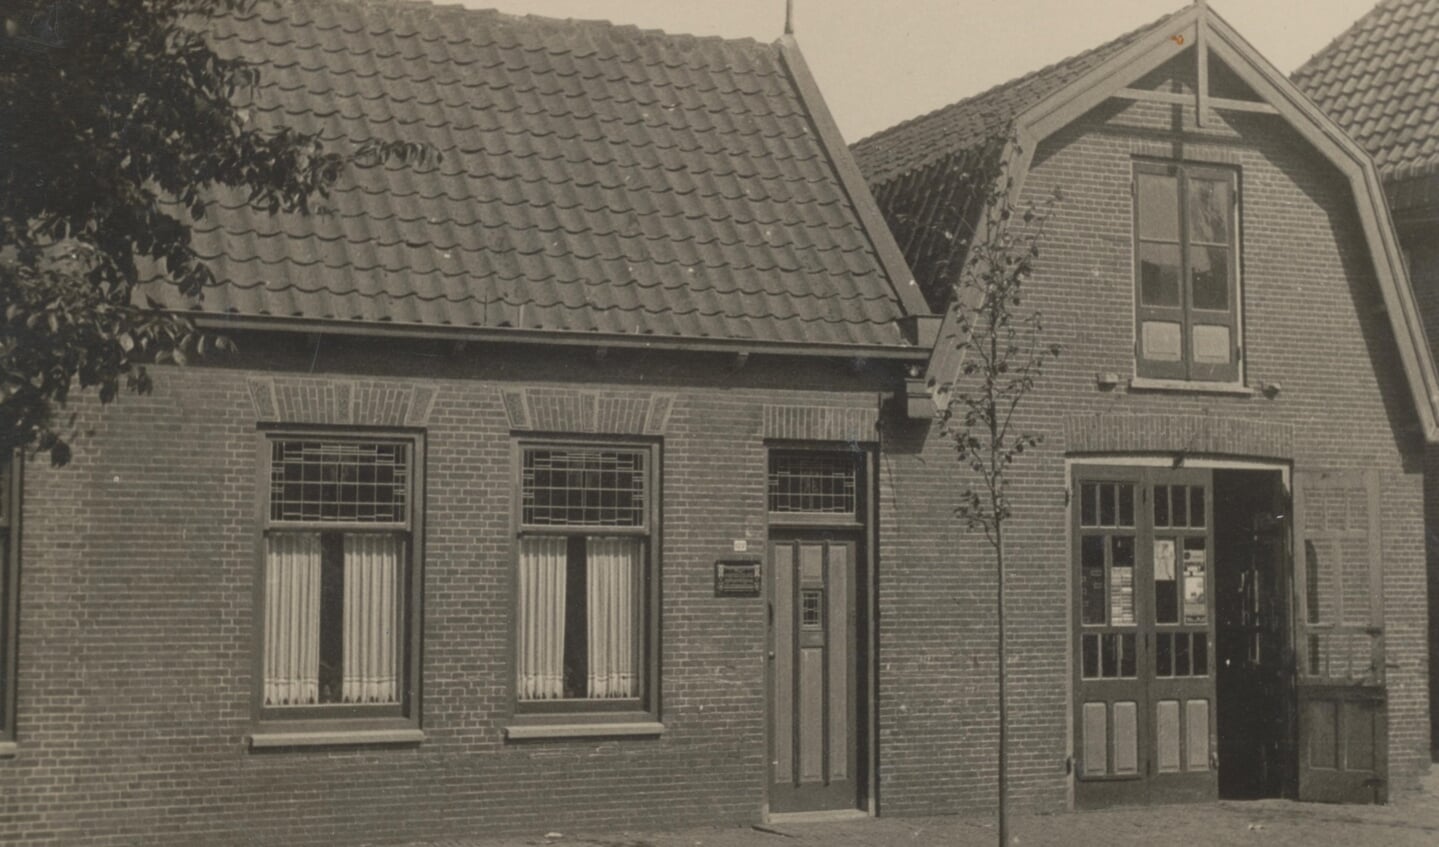 Woning en schilderswerkplaats Hein van der Plas aan Hoofdstraat 120, tegenwoordig de Herenstraat.